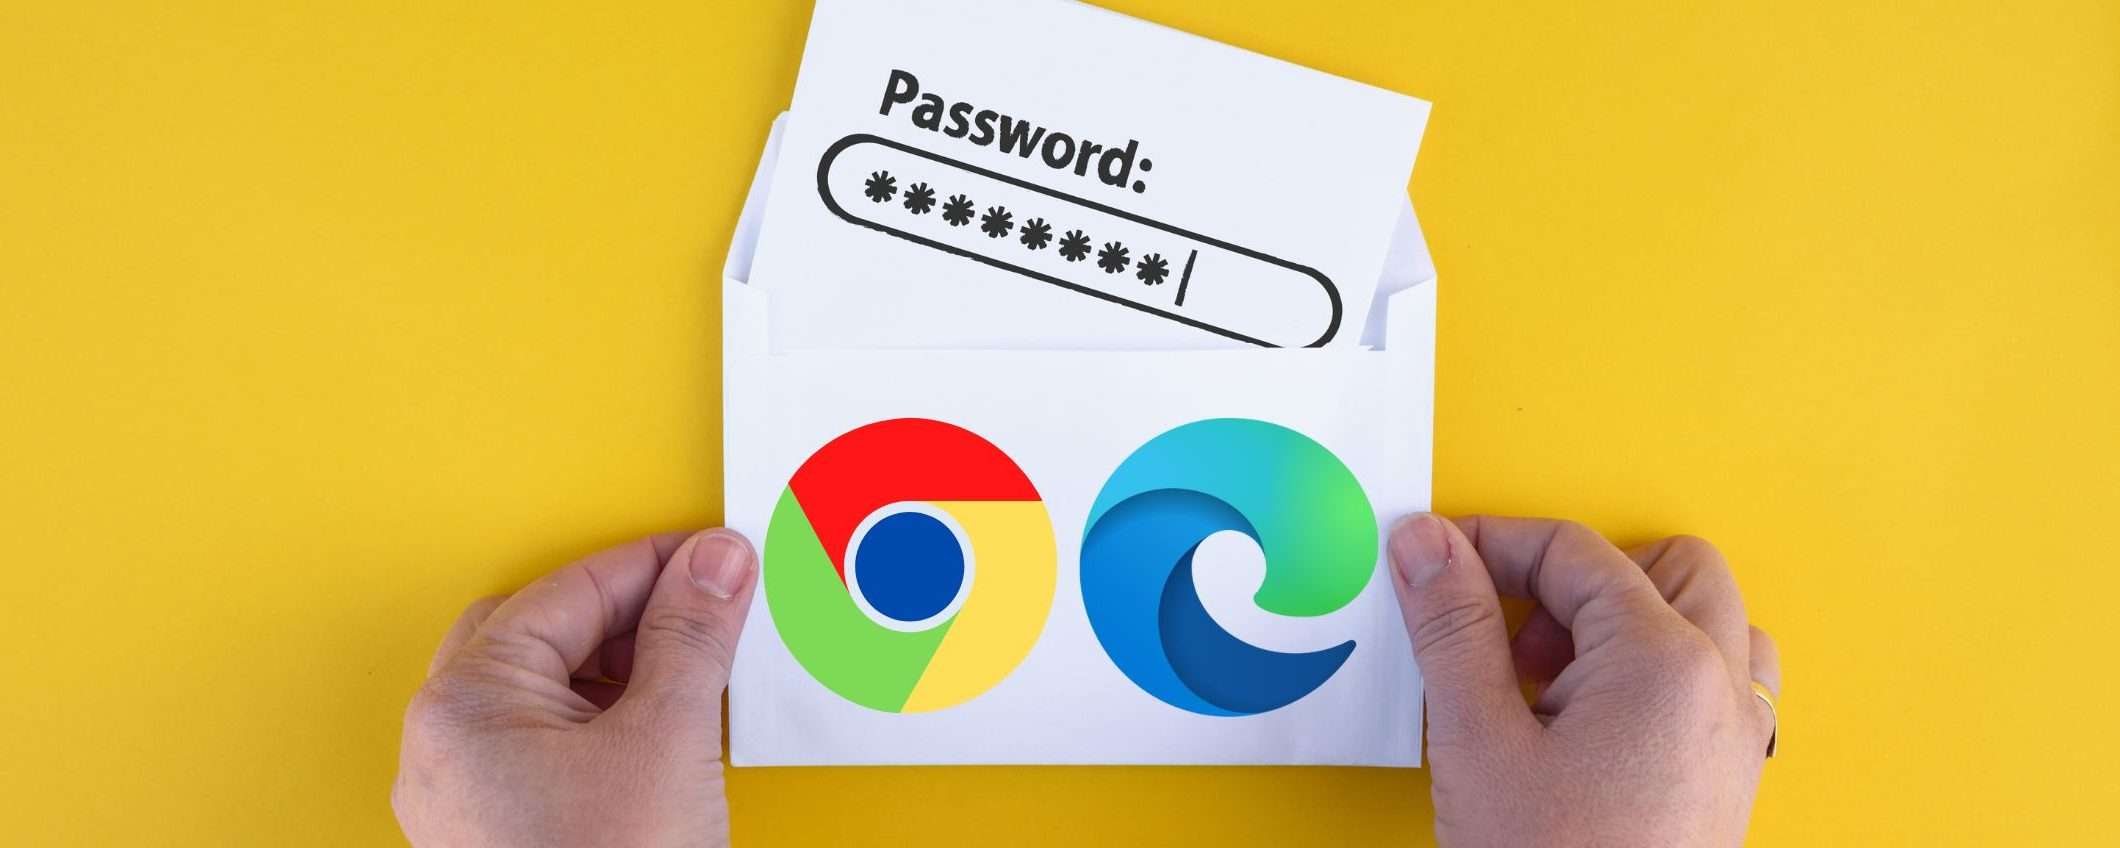 Chrome ed Edge: password in pericolo, come difendersi